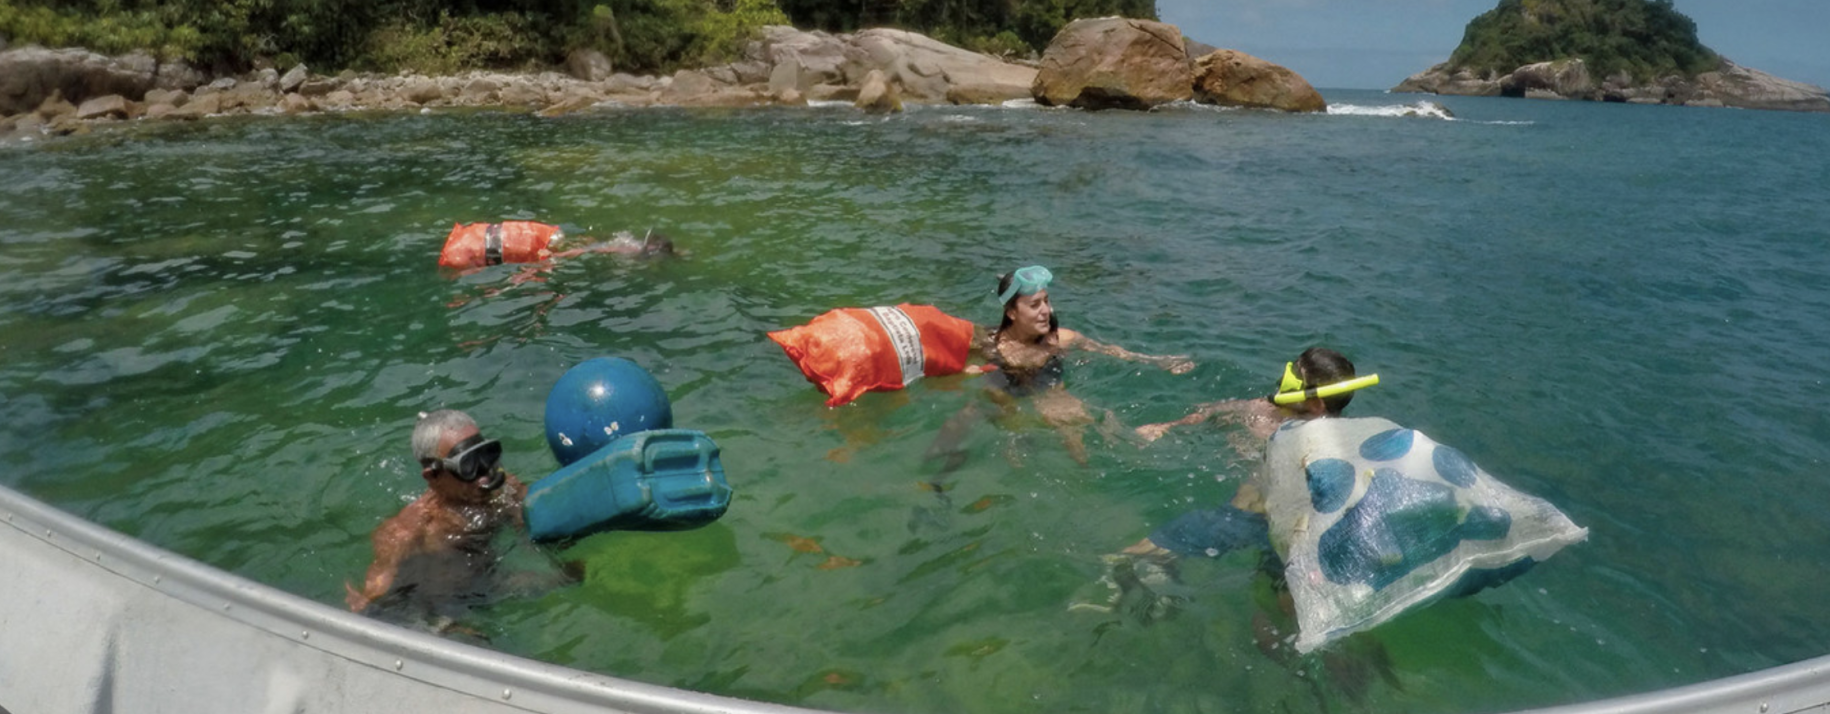 Varias personas nadan en el océano con bolsas grandes para recolectar desechos y una boya plástica flotante.